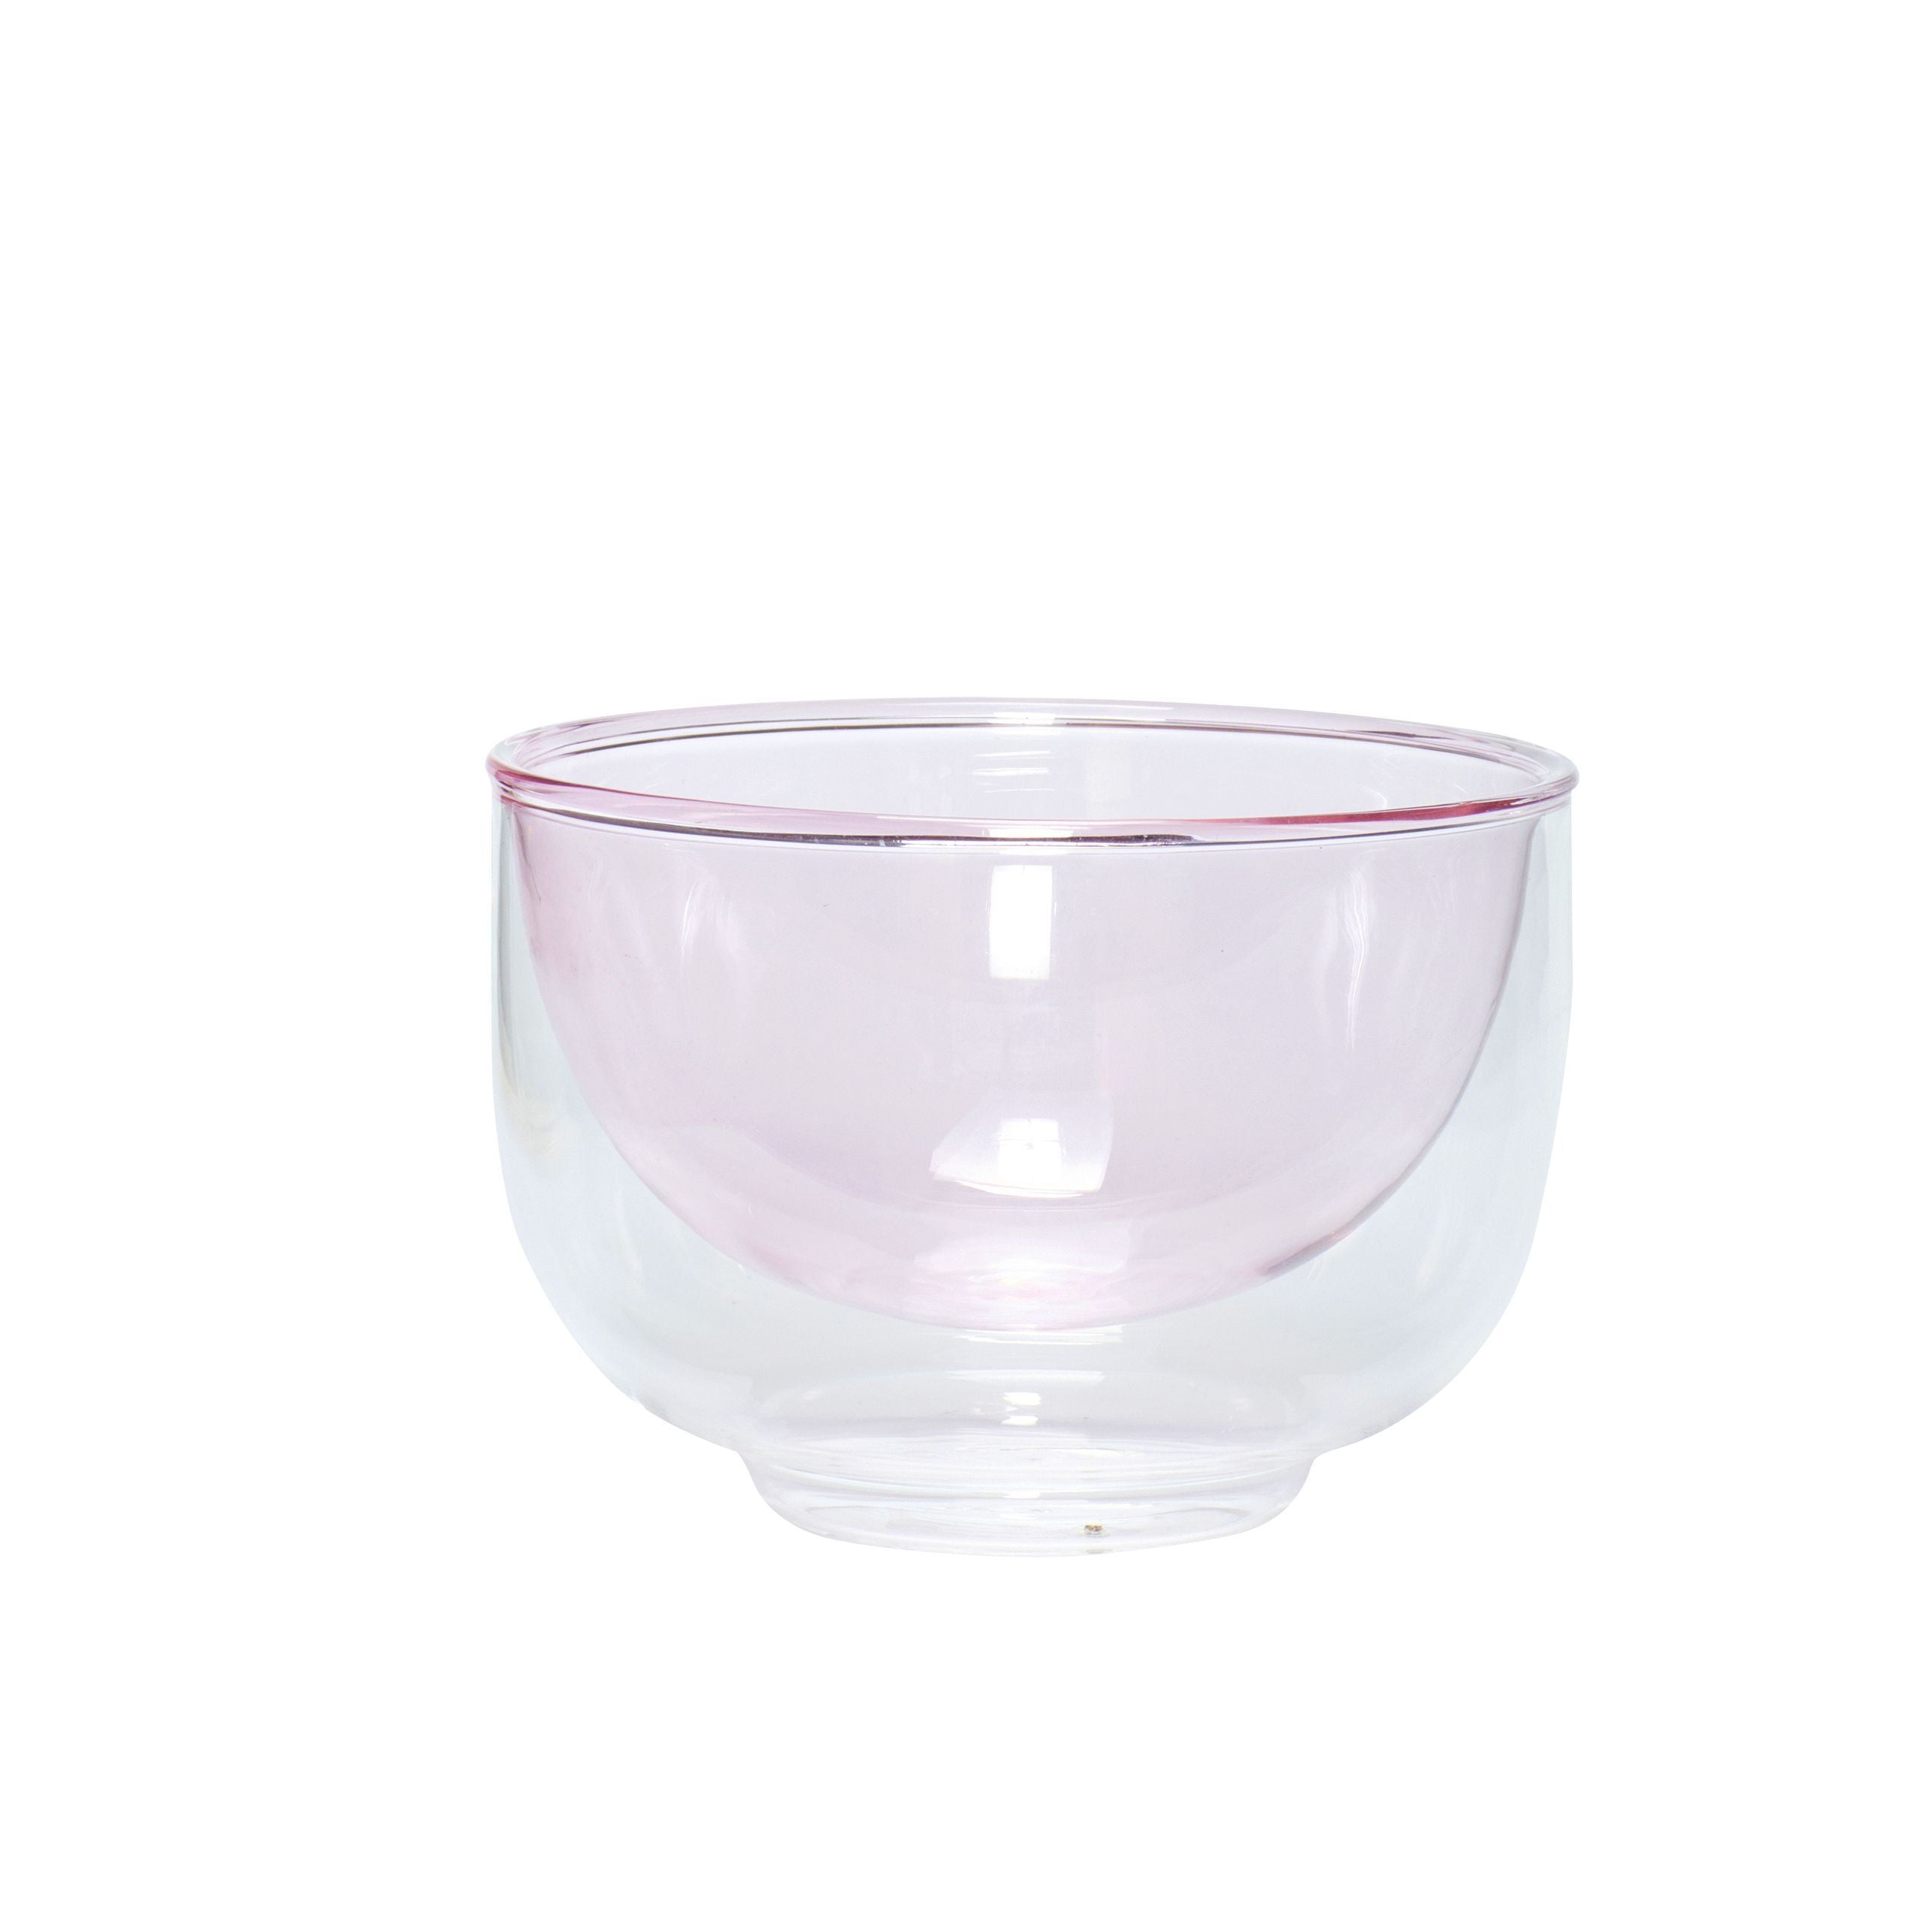 Hübsch Kiosk Bowl Glass Clear/Pink